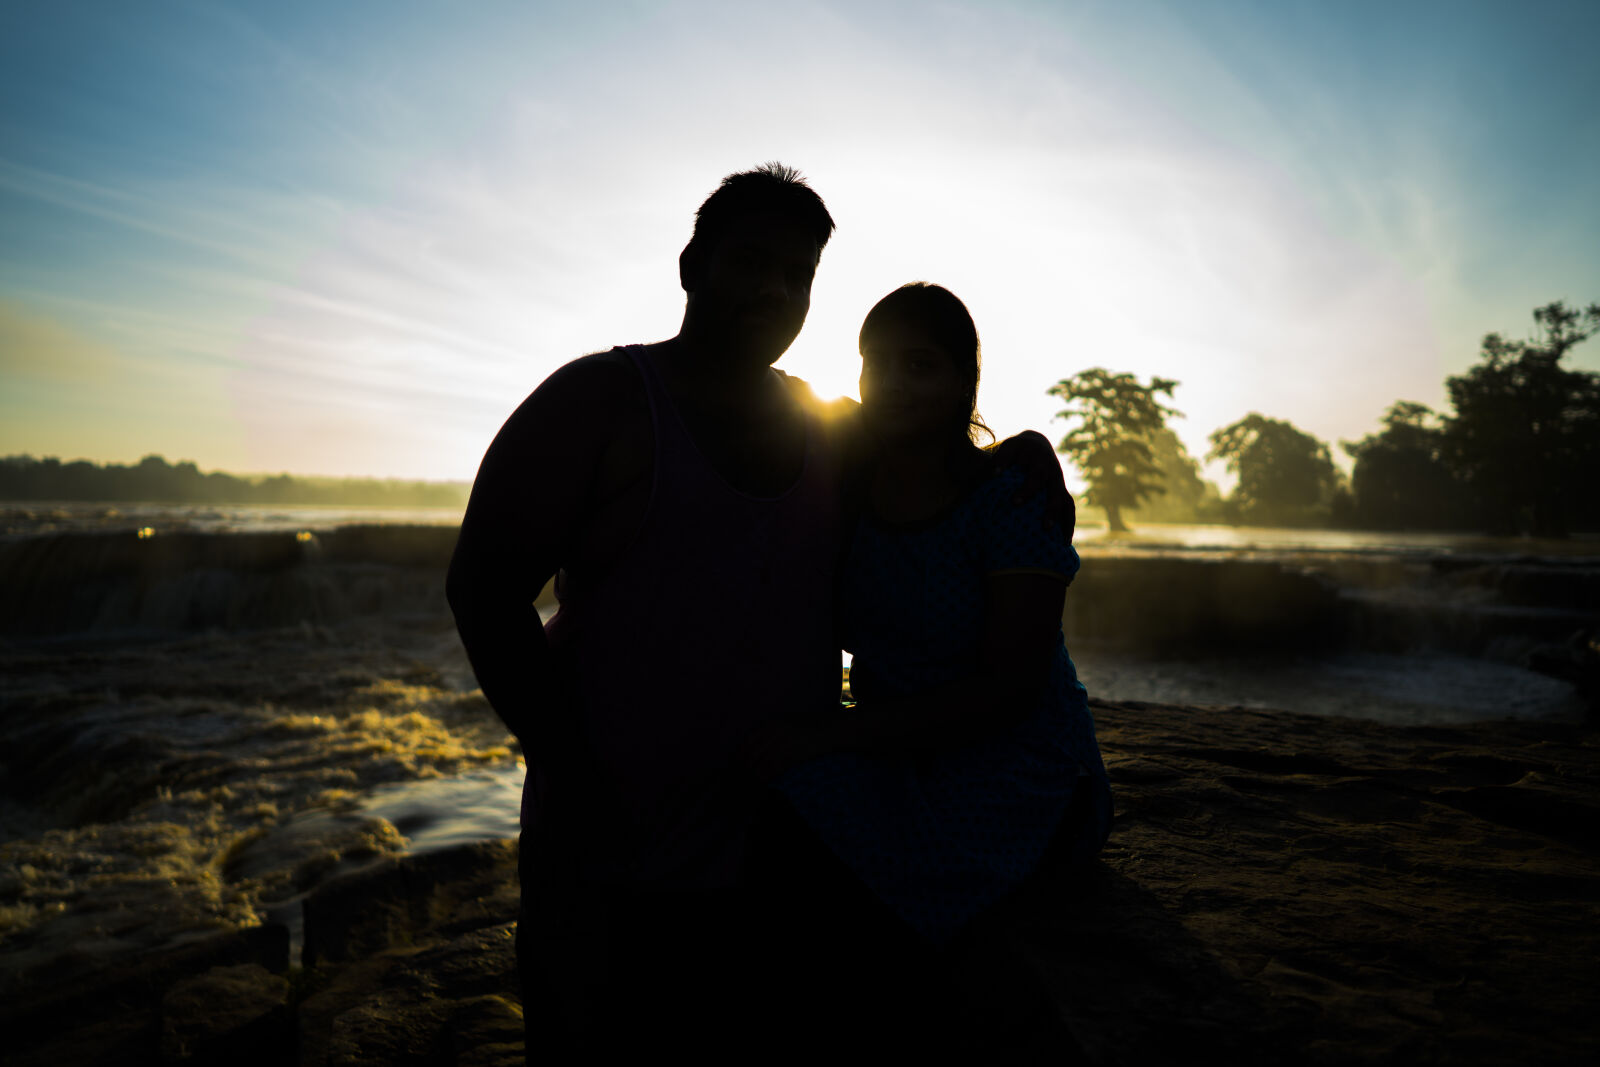 Sony a7R II sample photo. Couple, sun, sunrise photography